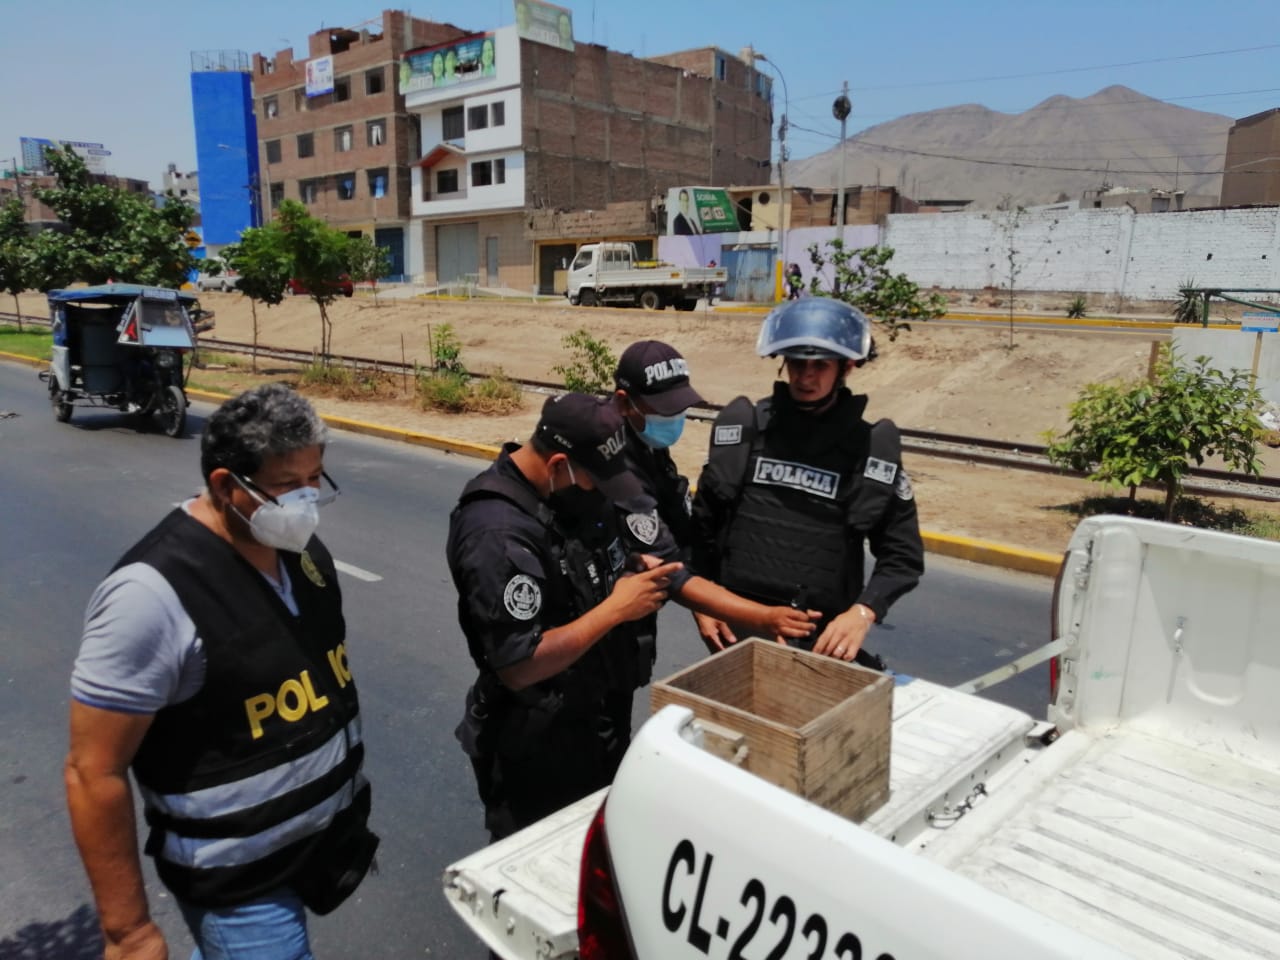 خبراء متفجرات في ليما يصادرون قنبلتين غير منفجرتين في ساحة عامة بعد تبادل معلومات خلال العمليات.